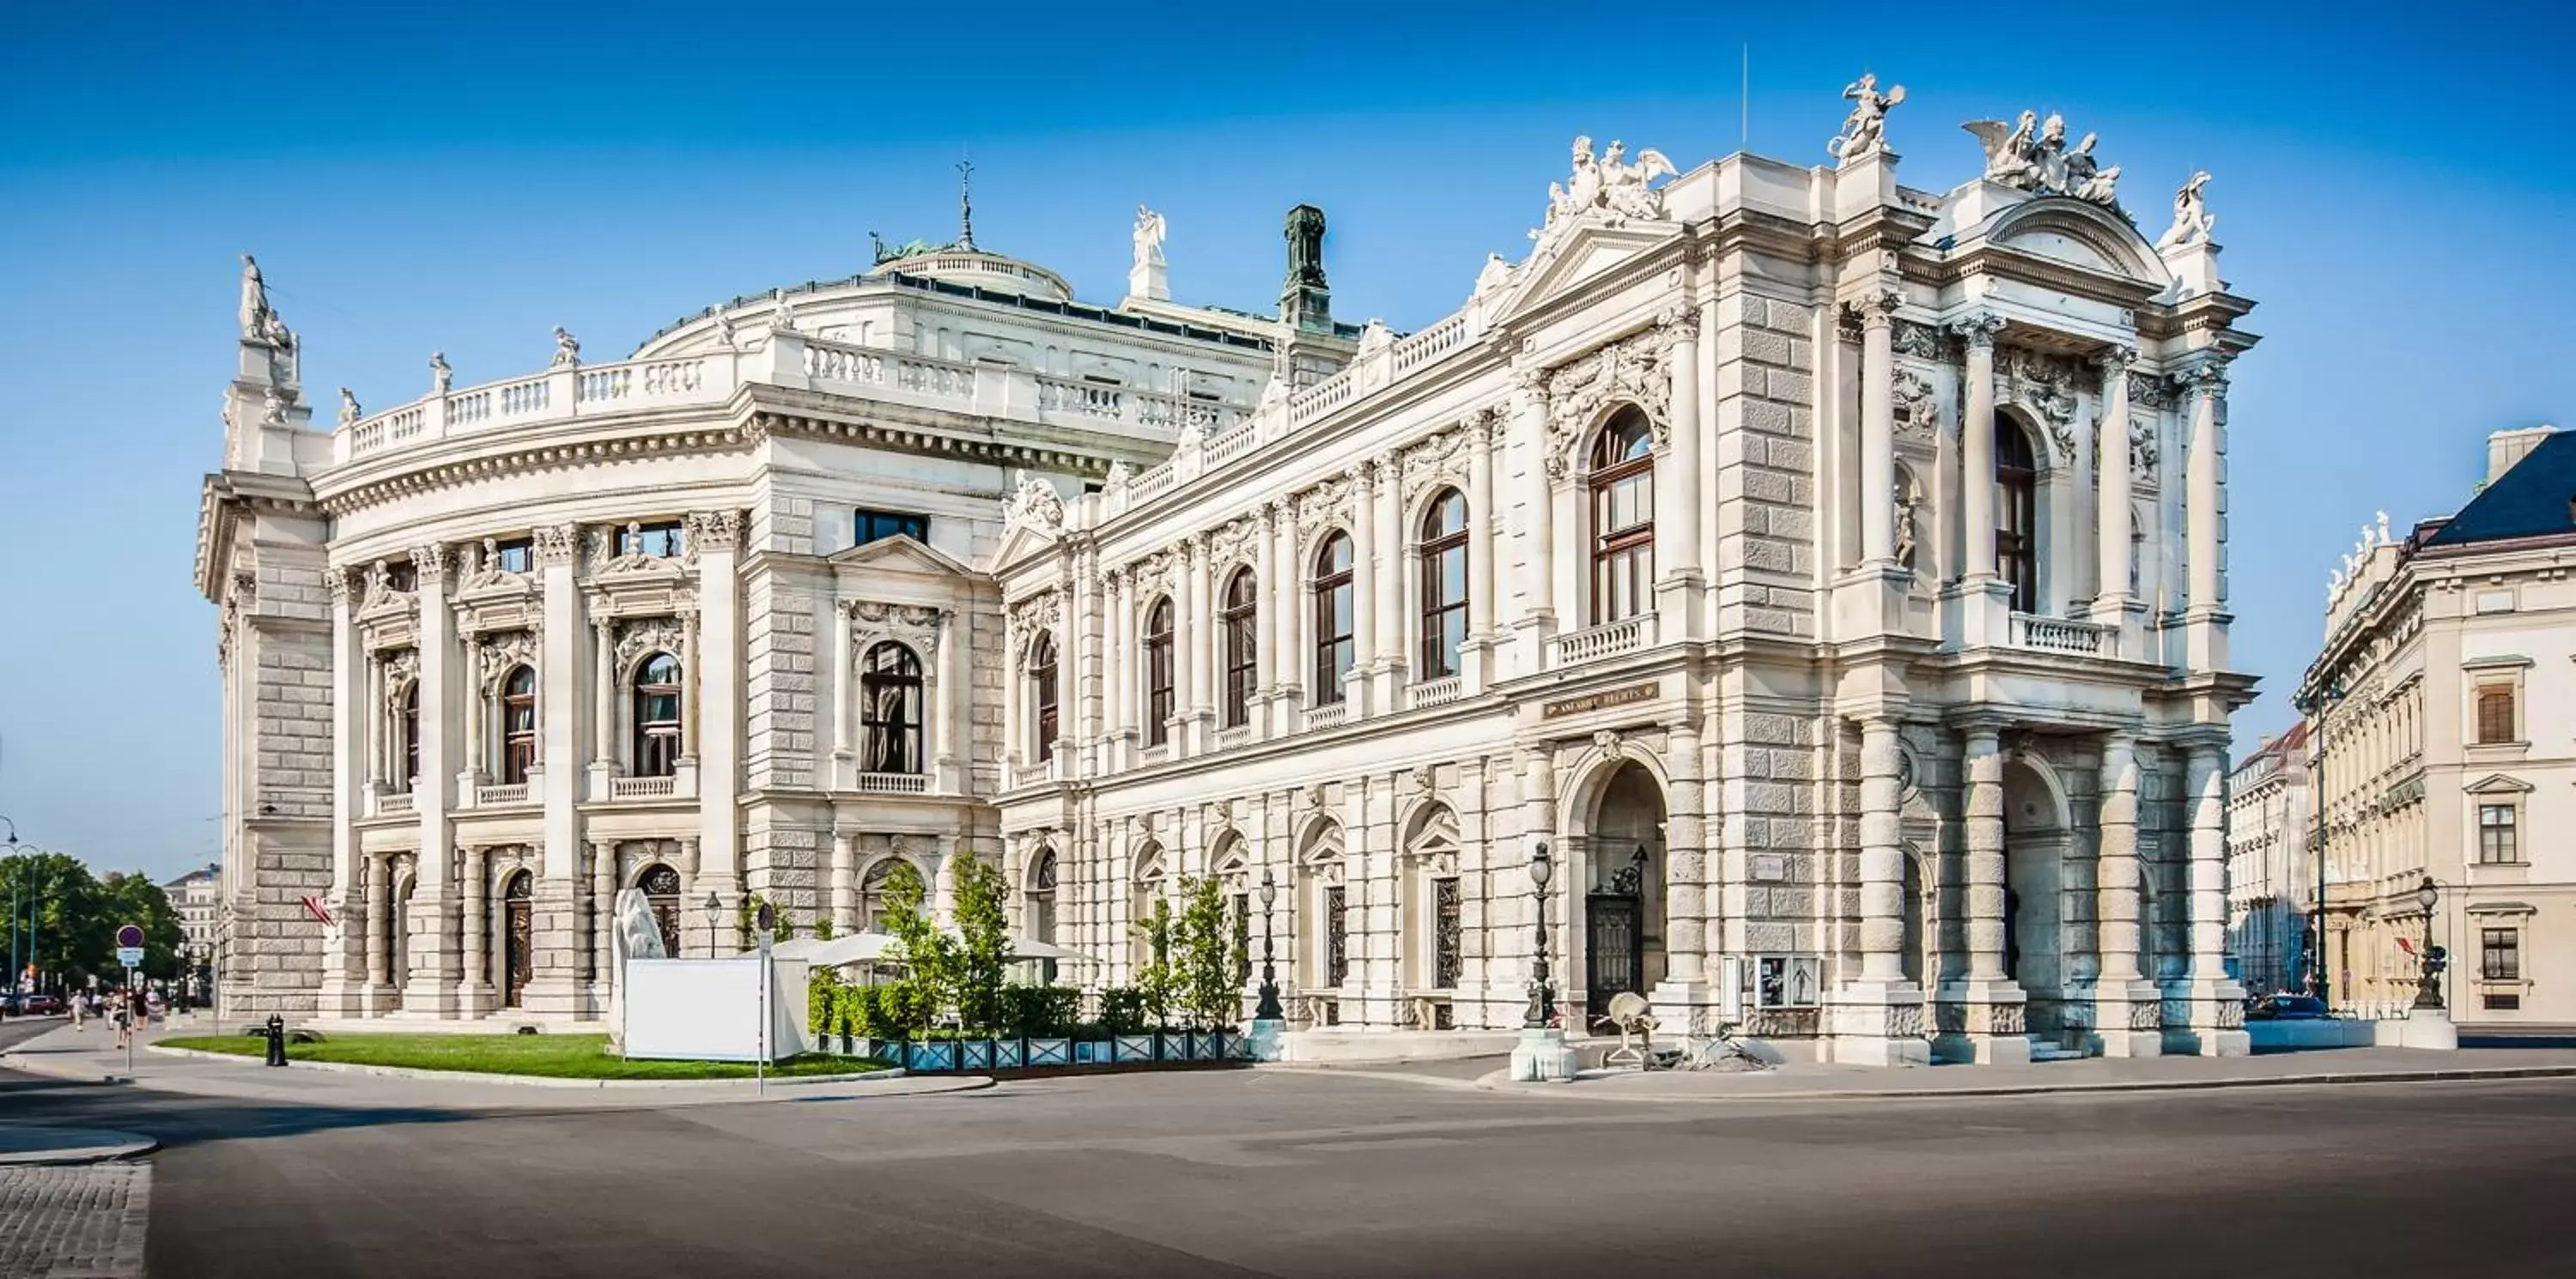 Nearby landmark, Property Building in Grand Hotel Wien